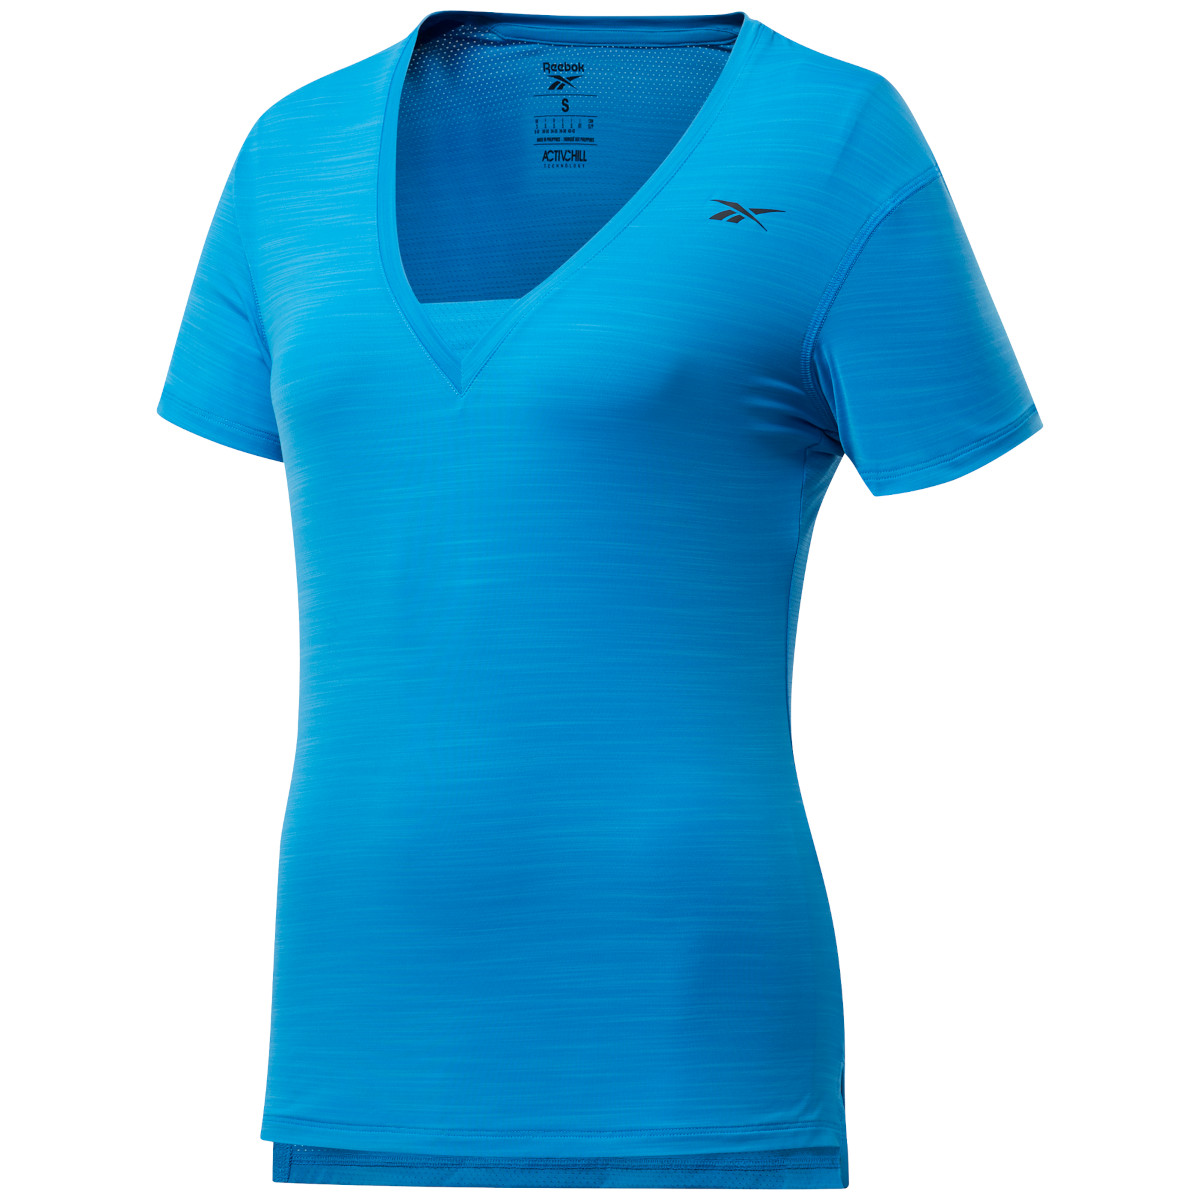 Produktbild von Reebok Frauen Activechill Athletic T-Shirt - horizon blue FU1990